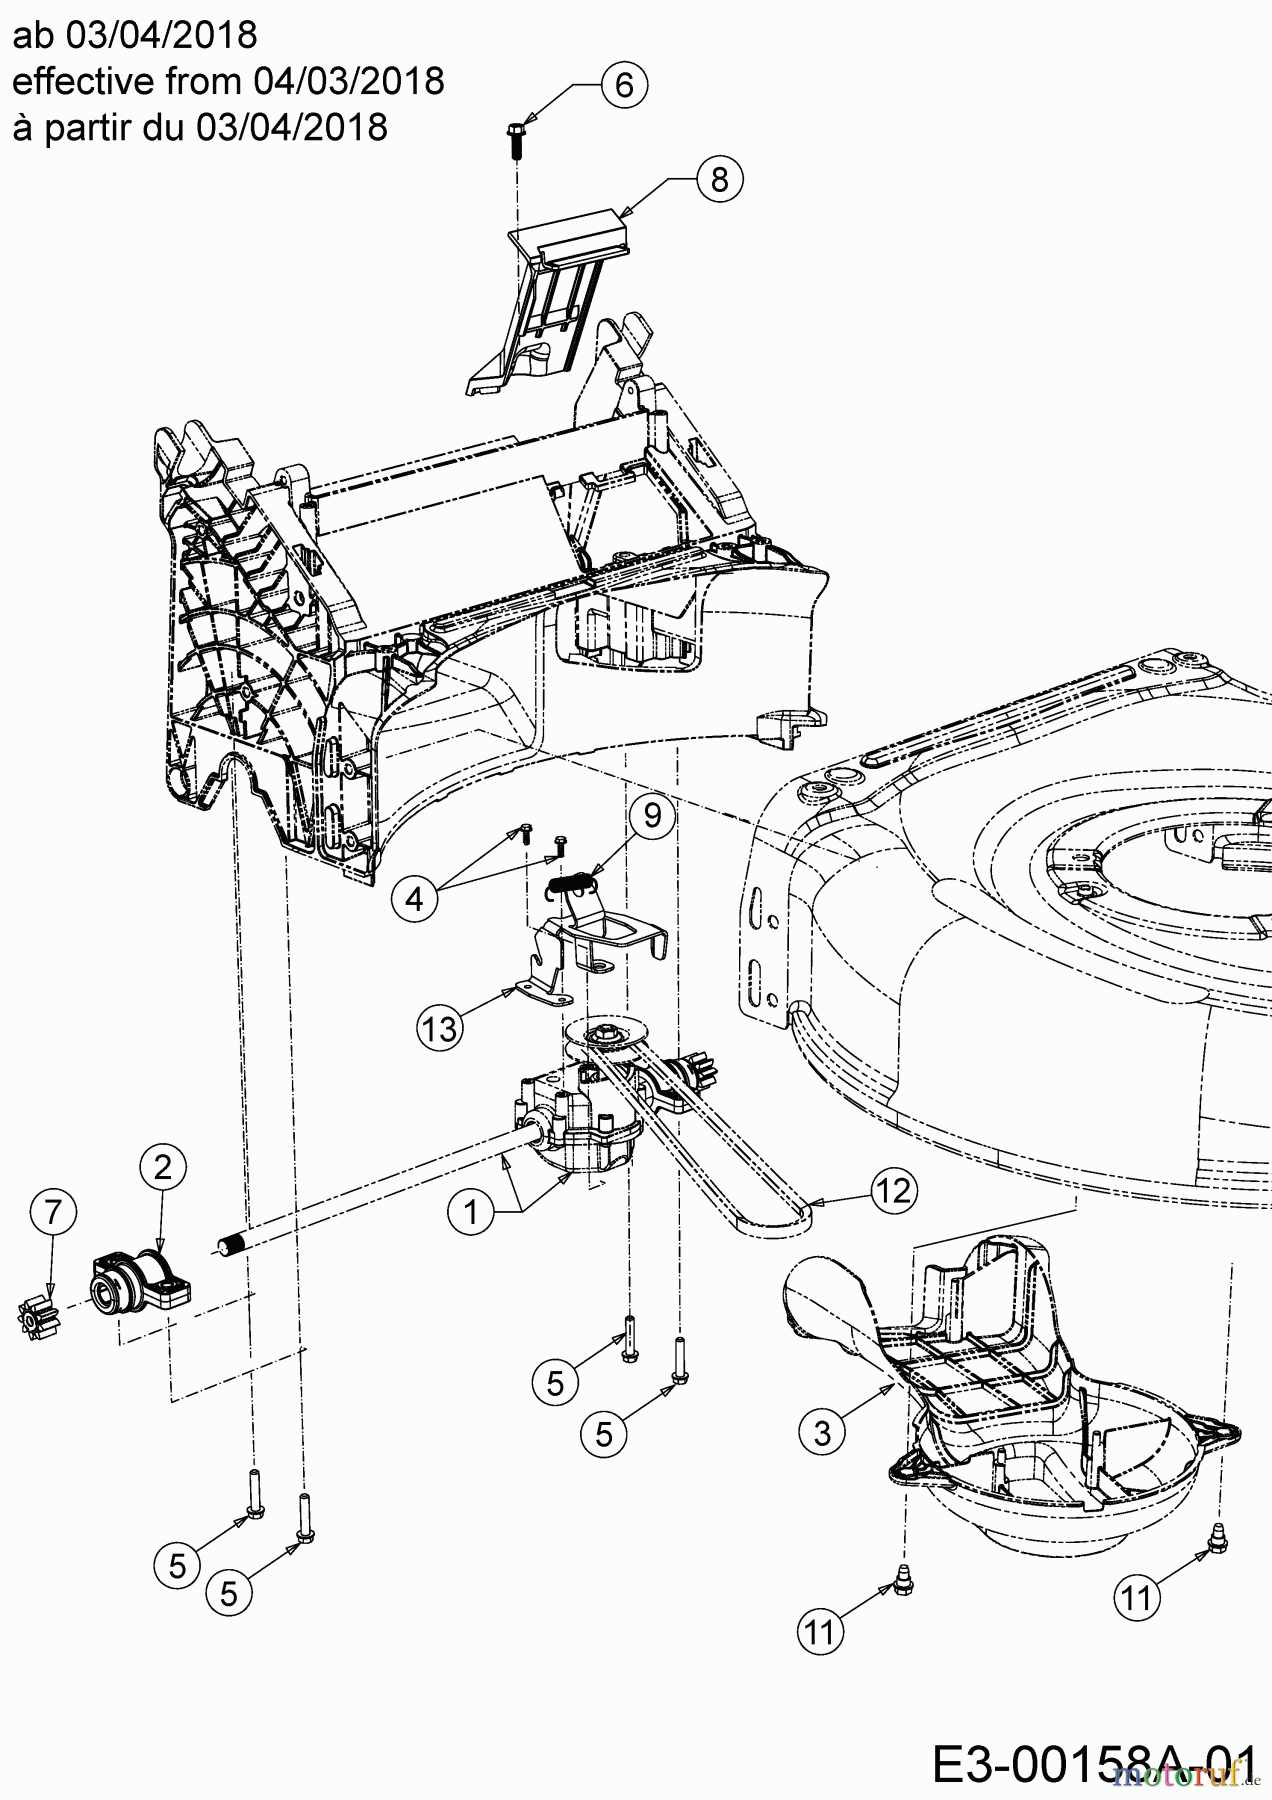  Wolf-Garten Motormäher mit Antrieb AH 4200 H 12A-LV5B650  (2019) Getriebe, Keilriemen ab 03/04/2018